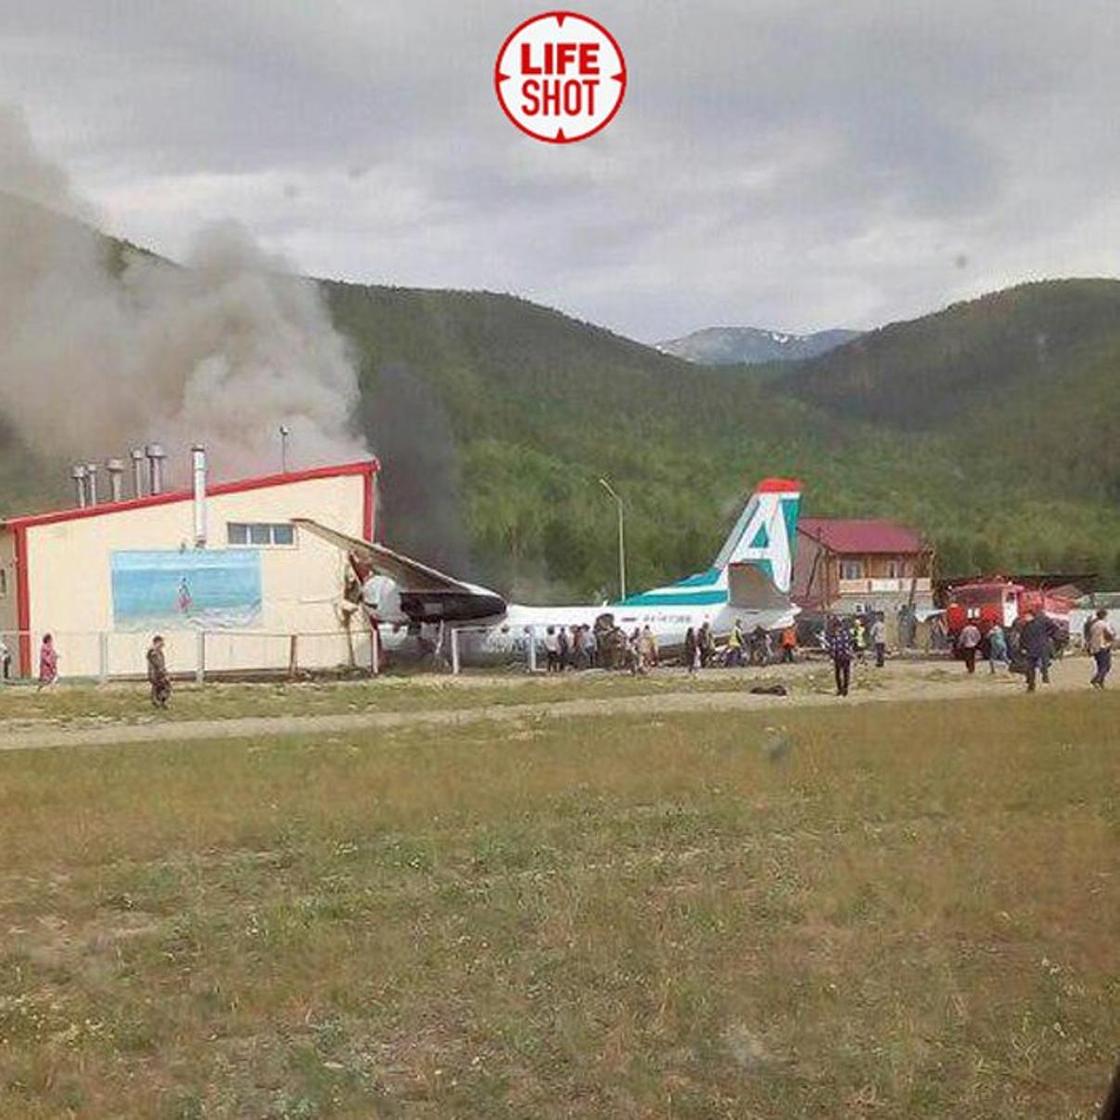 Самолет врезался в здание и загорелся в Бурятии: пилоты погибли, десятки пострадавших (фото, видео)